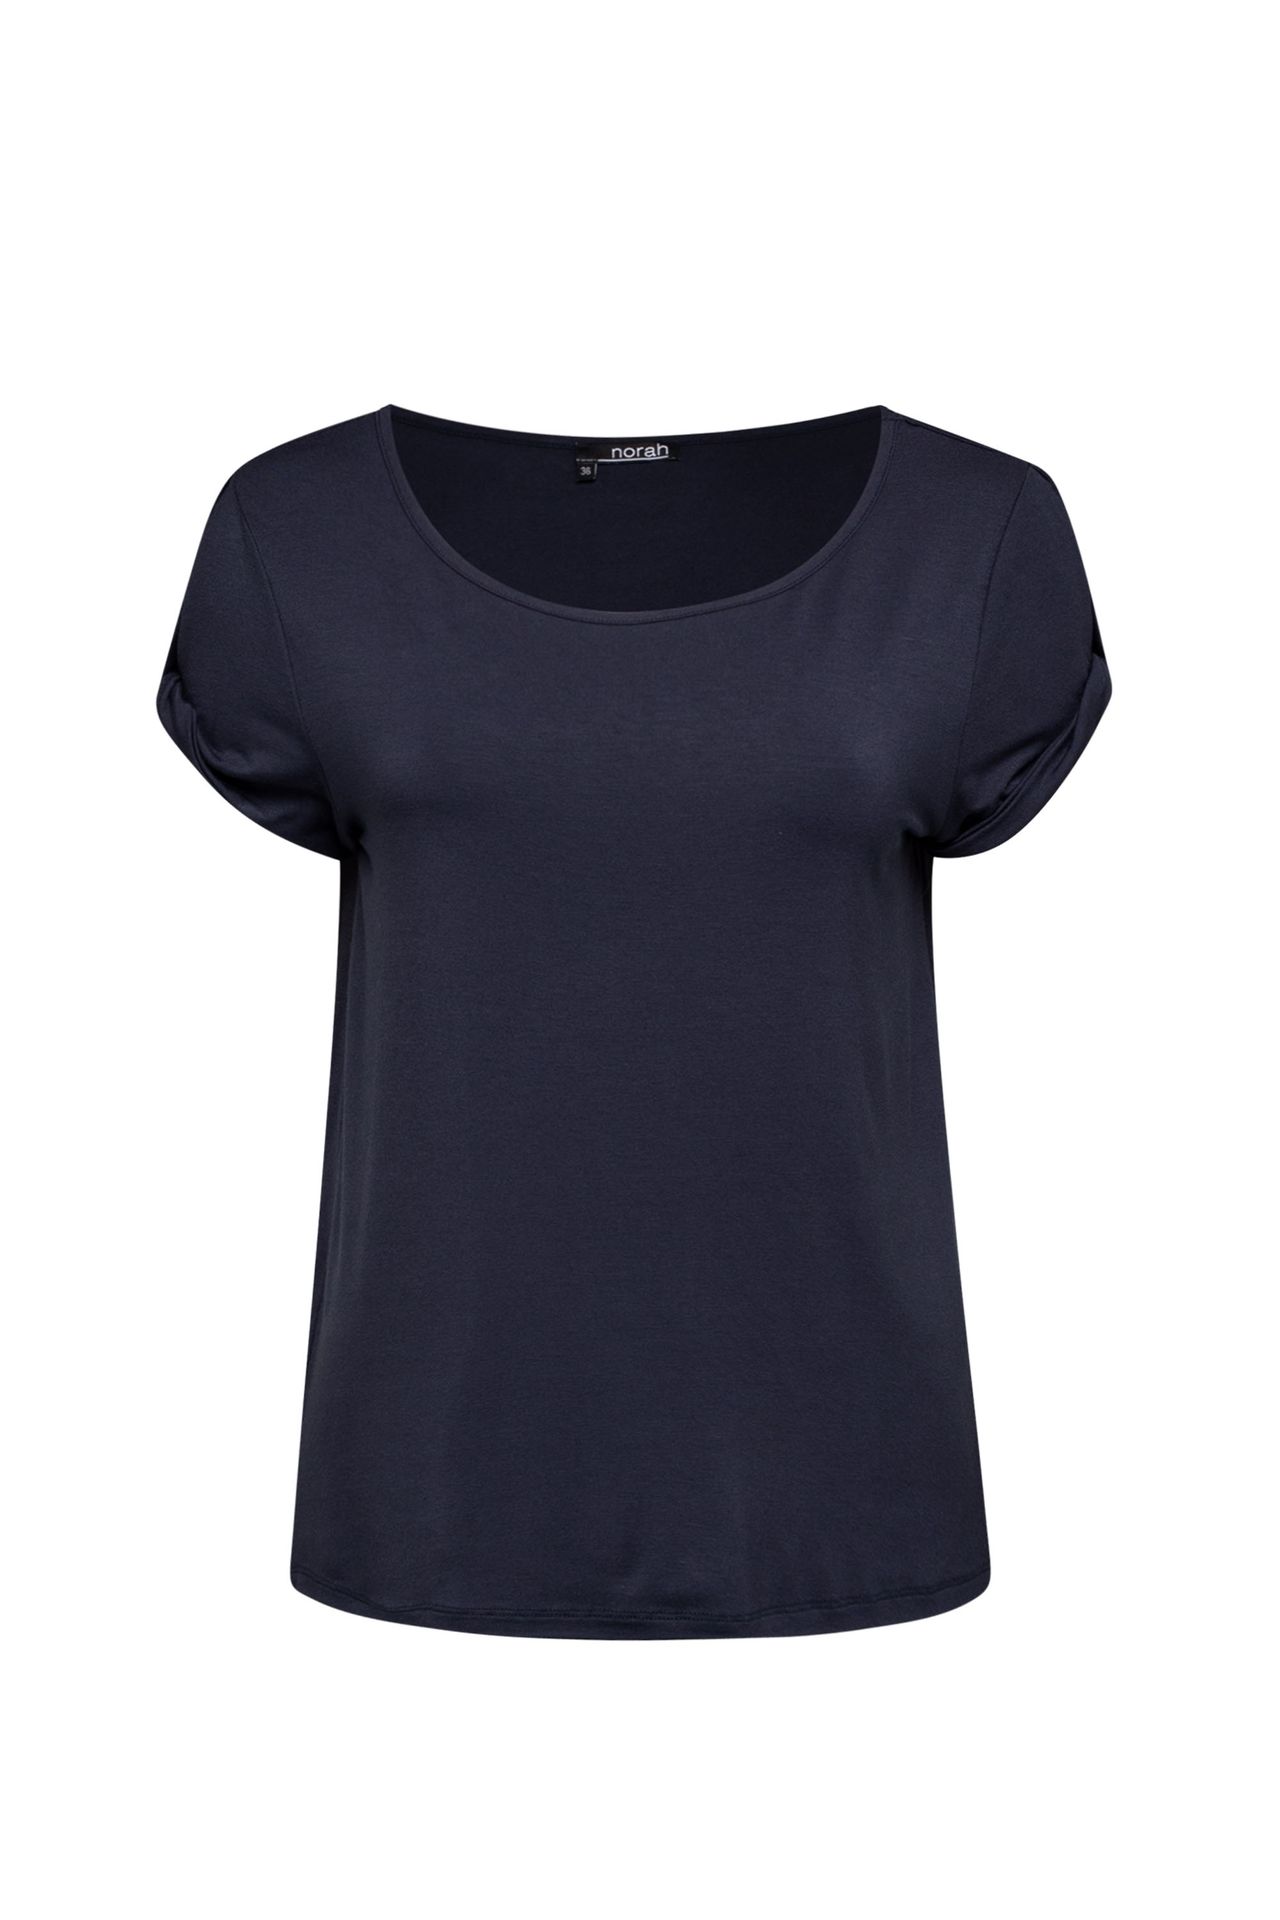 Norah Shirt donkerblauw navy 210216-492